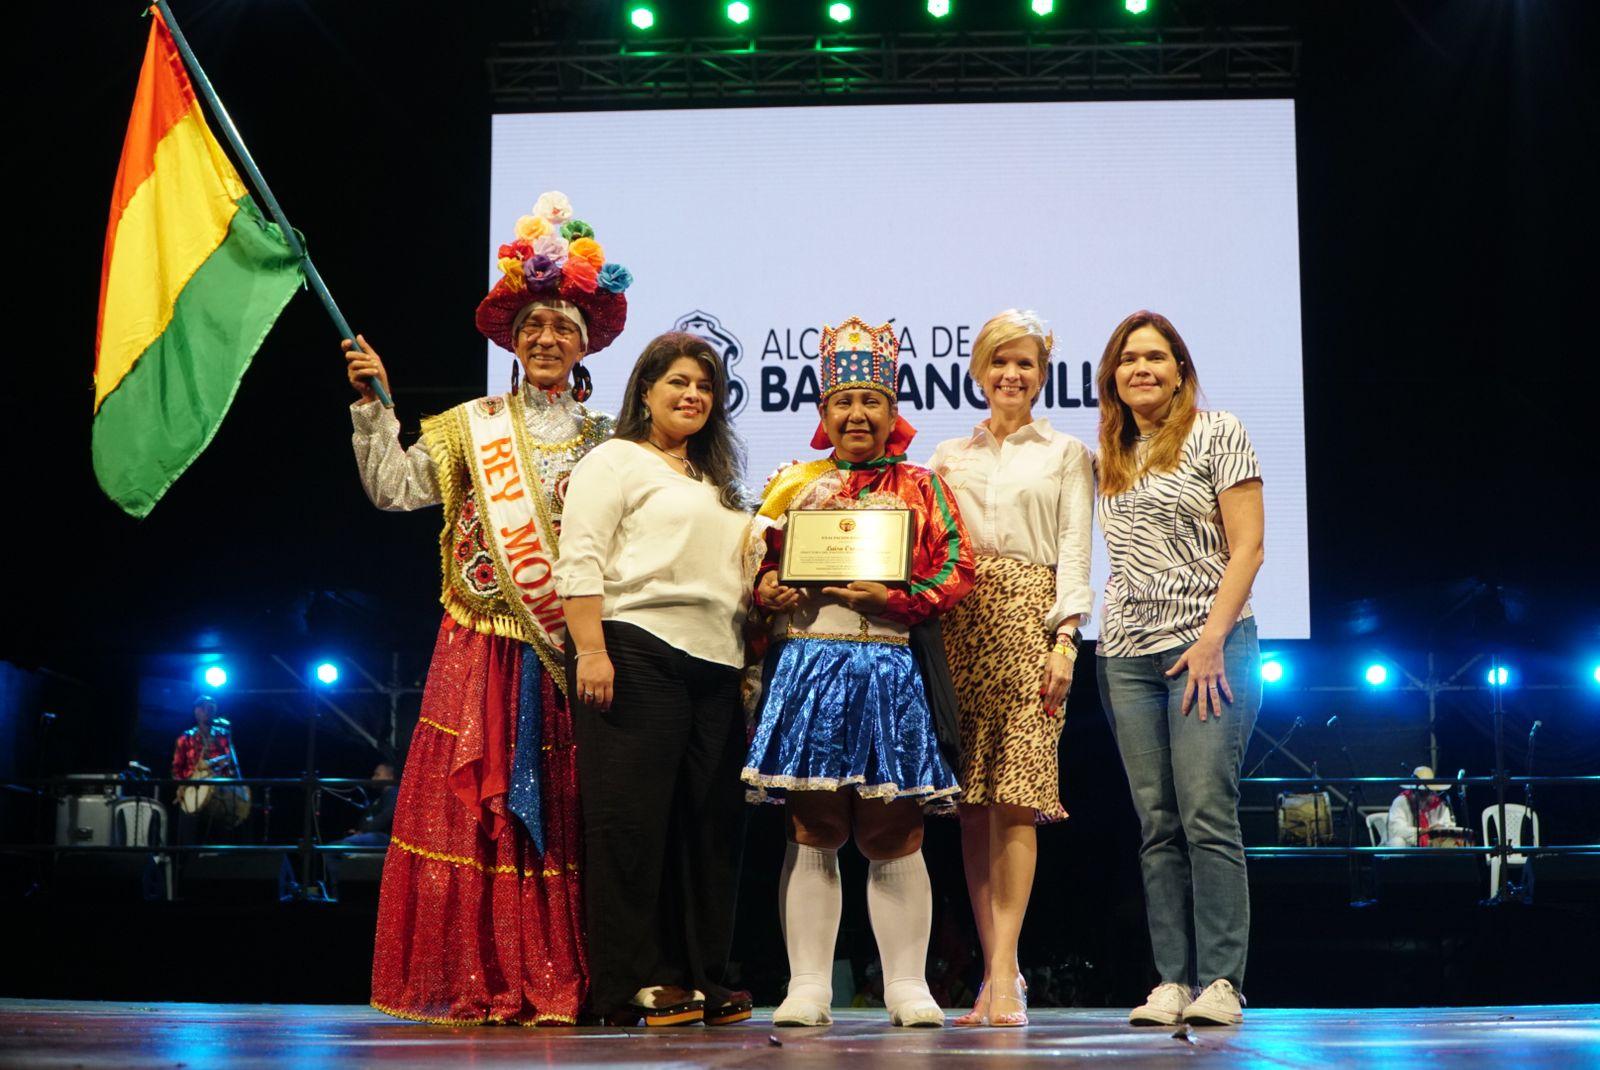 Edaida Orozco, recibió el Premio Vida y Obra a la Tradición a nombre de su mamá, Luisa Orozco, directora de la Danza Paloteo Bolivariano.